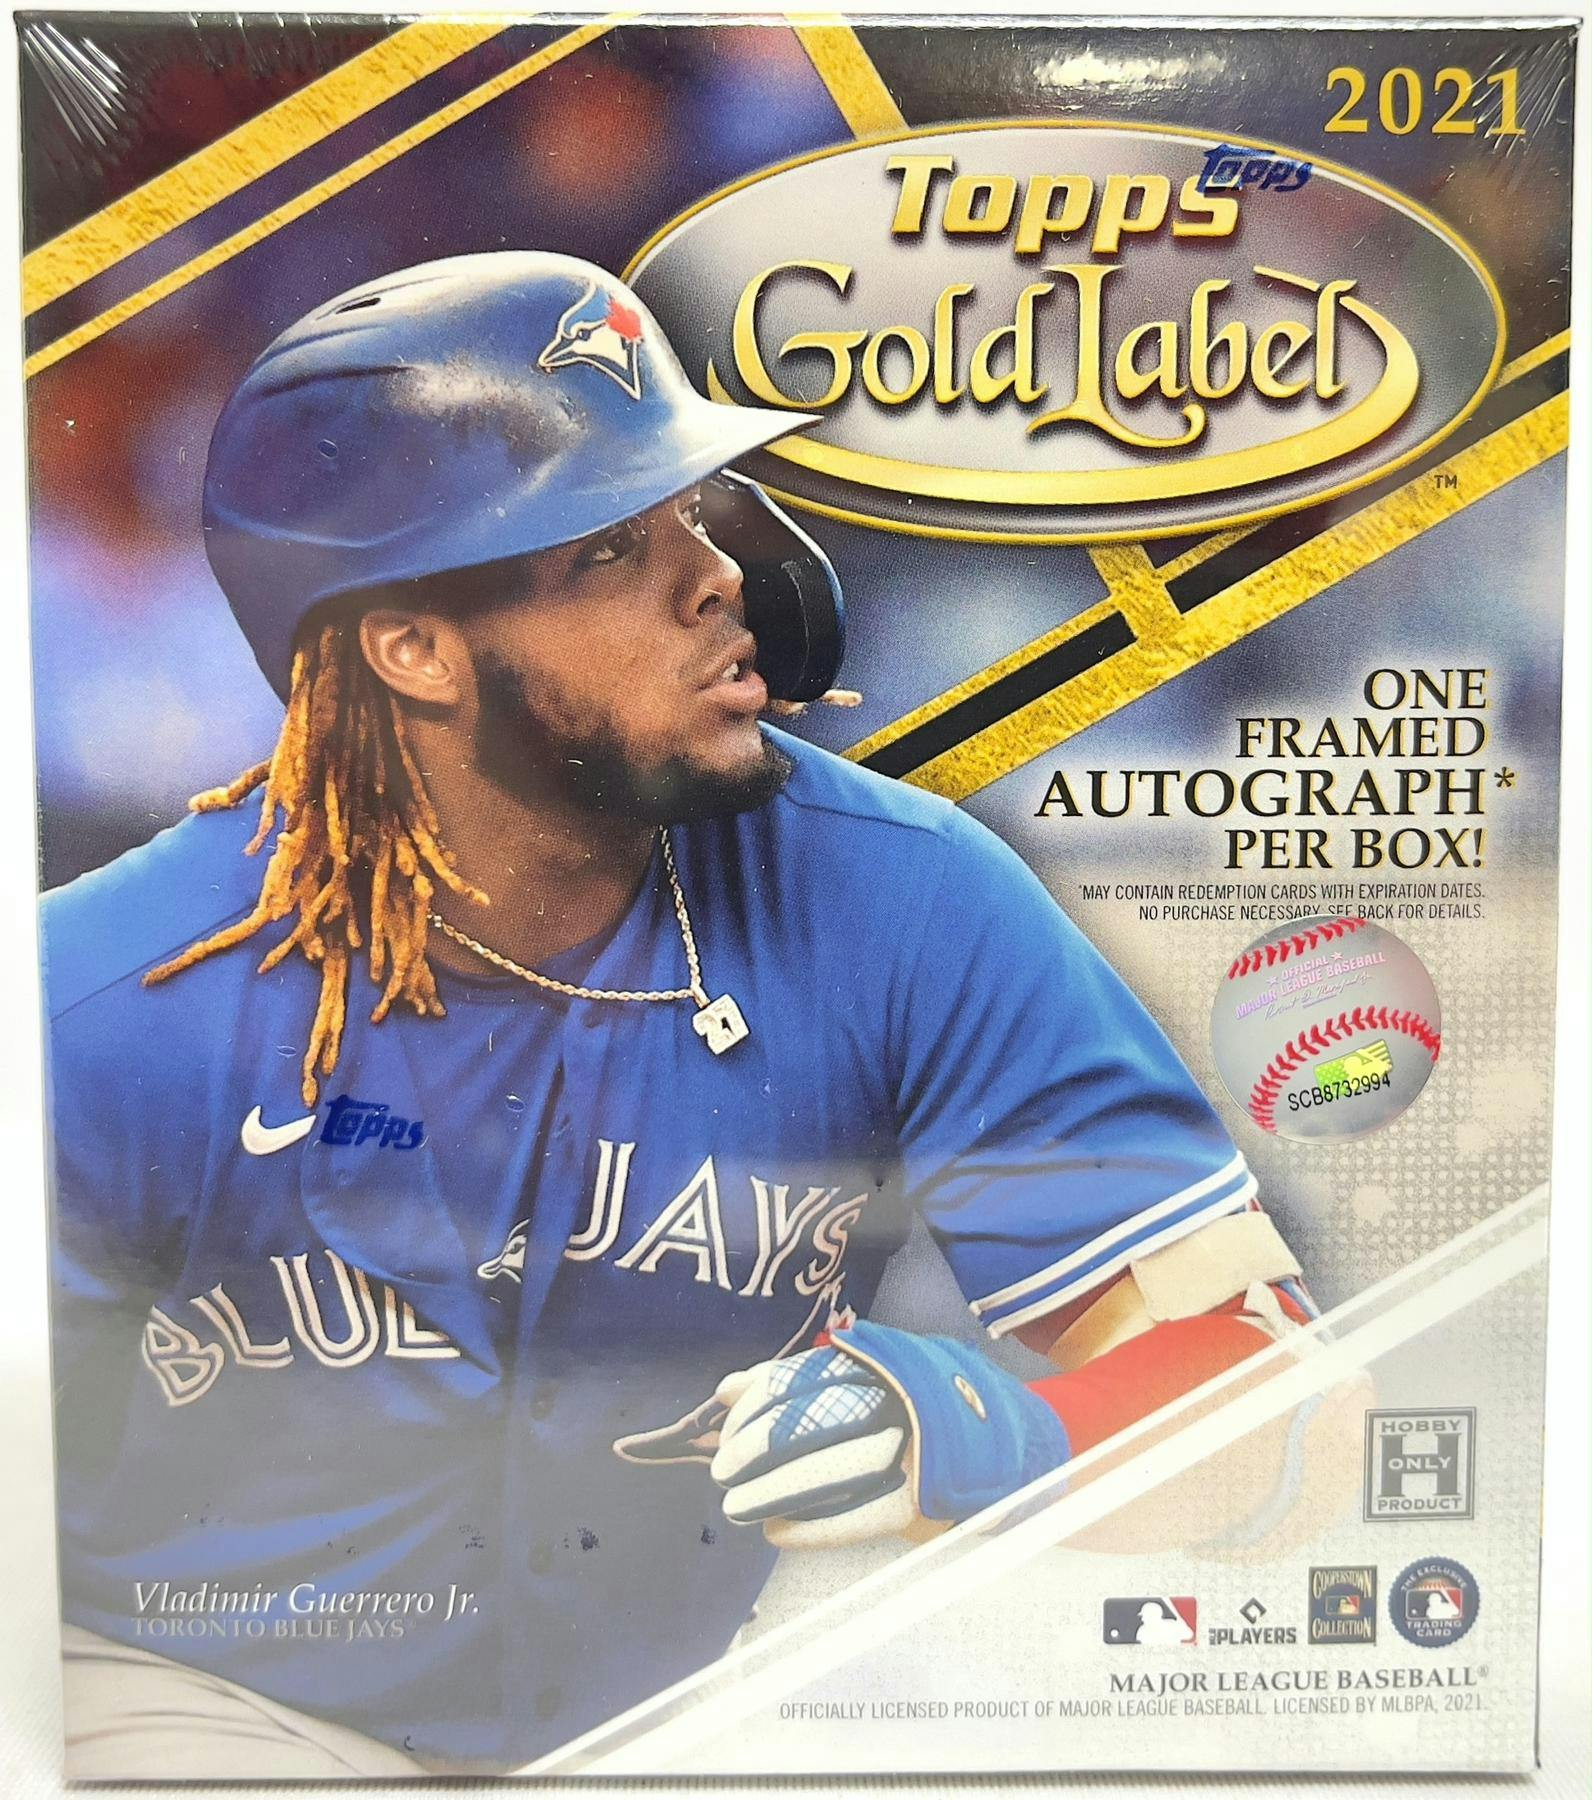 Topps 2021 Gold Label Baseball Hobby Box